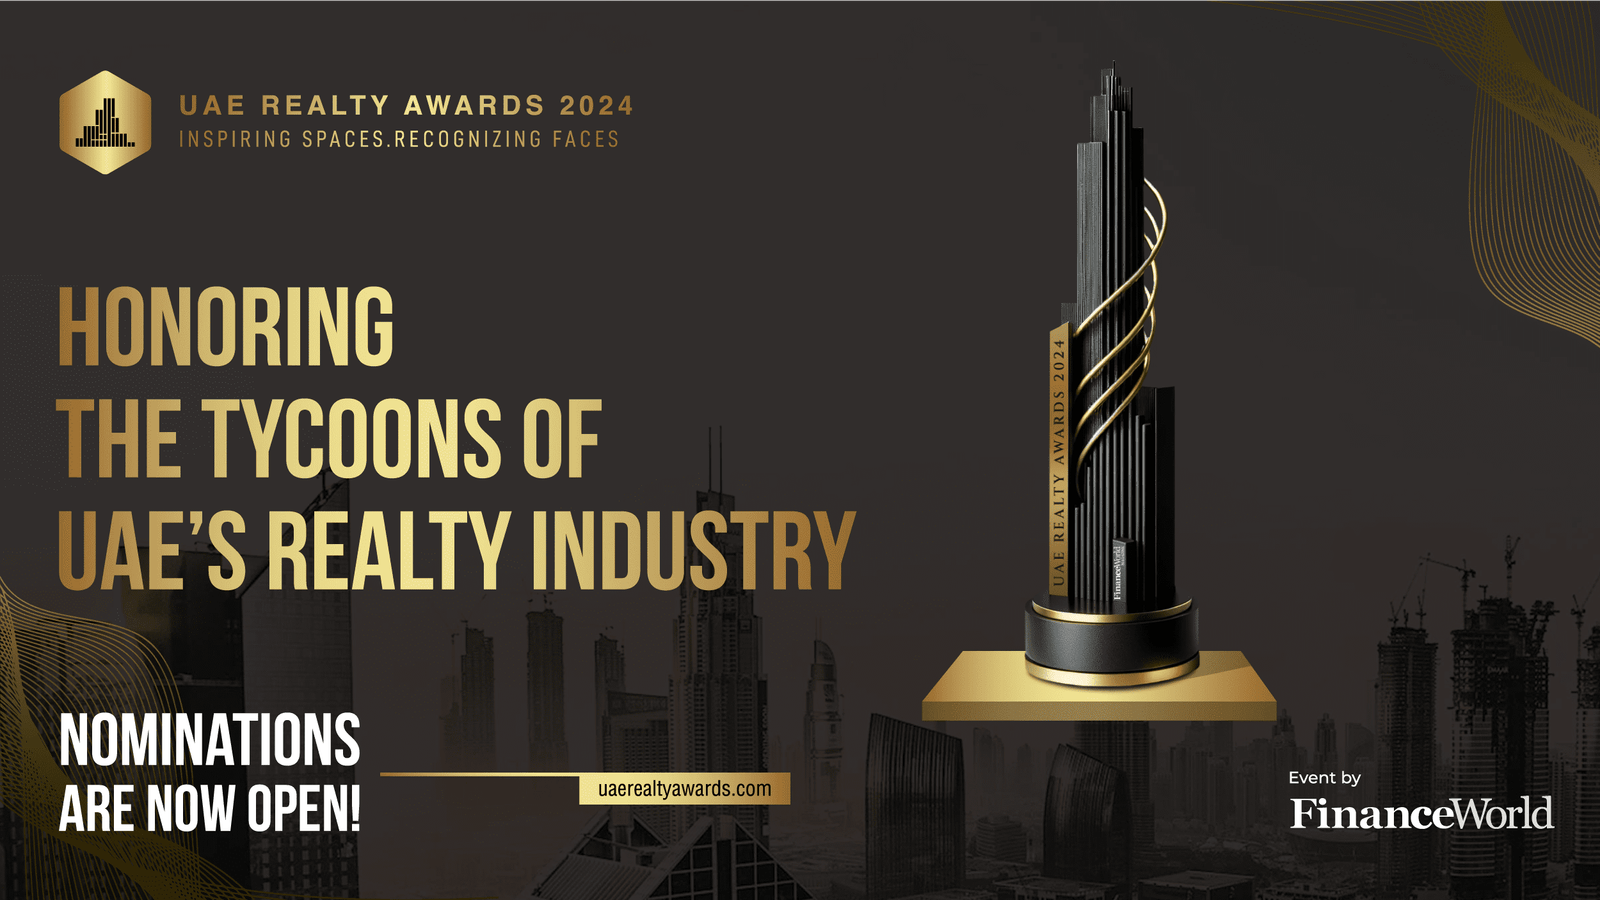 UAE Realty Awards 2024